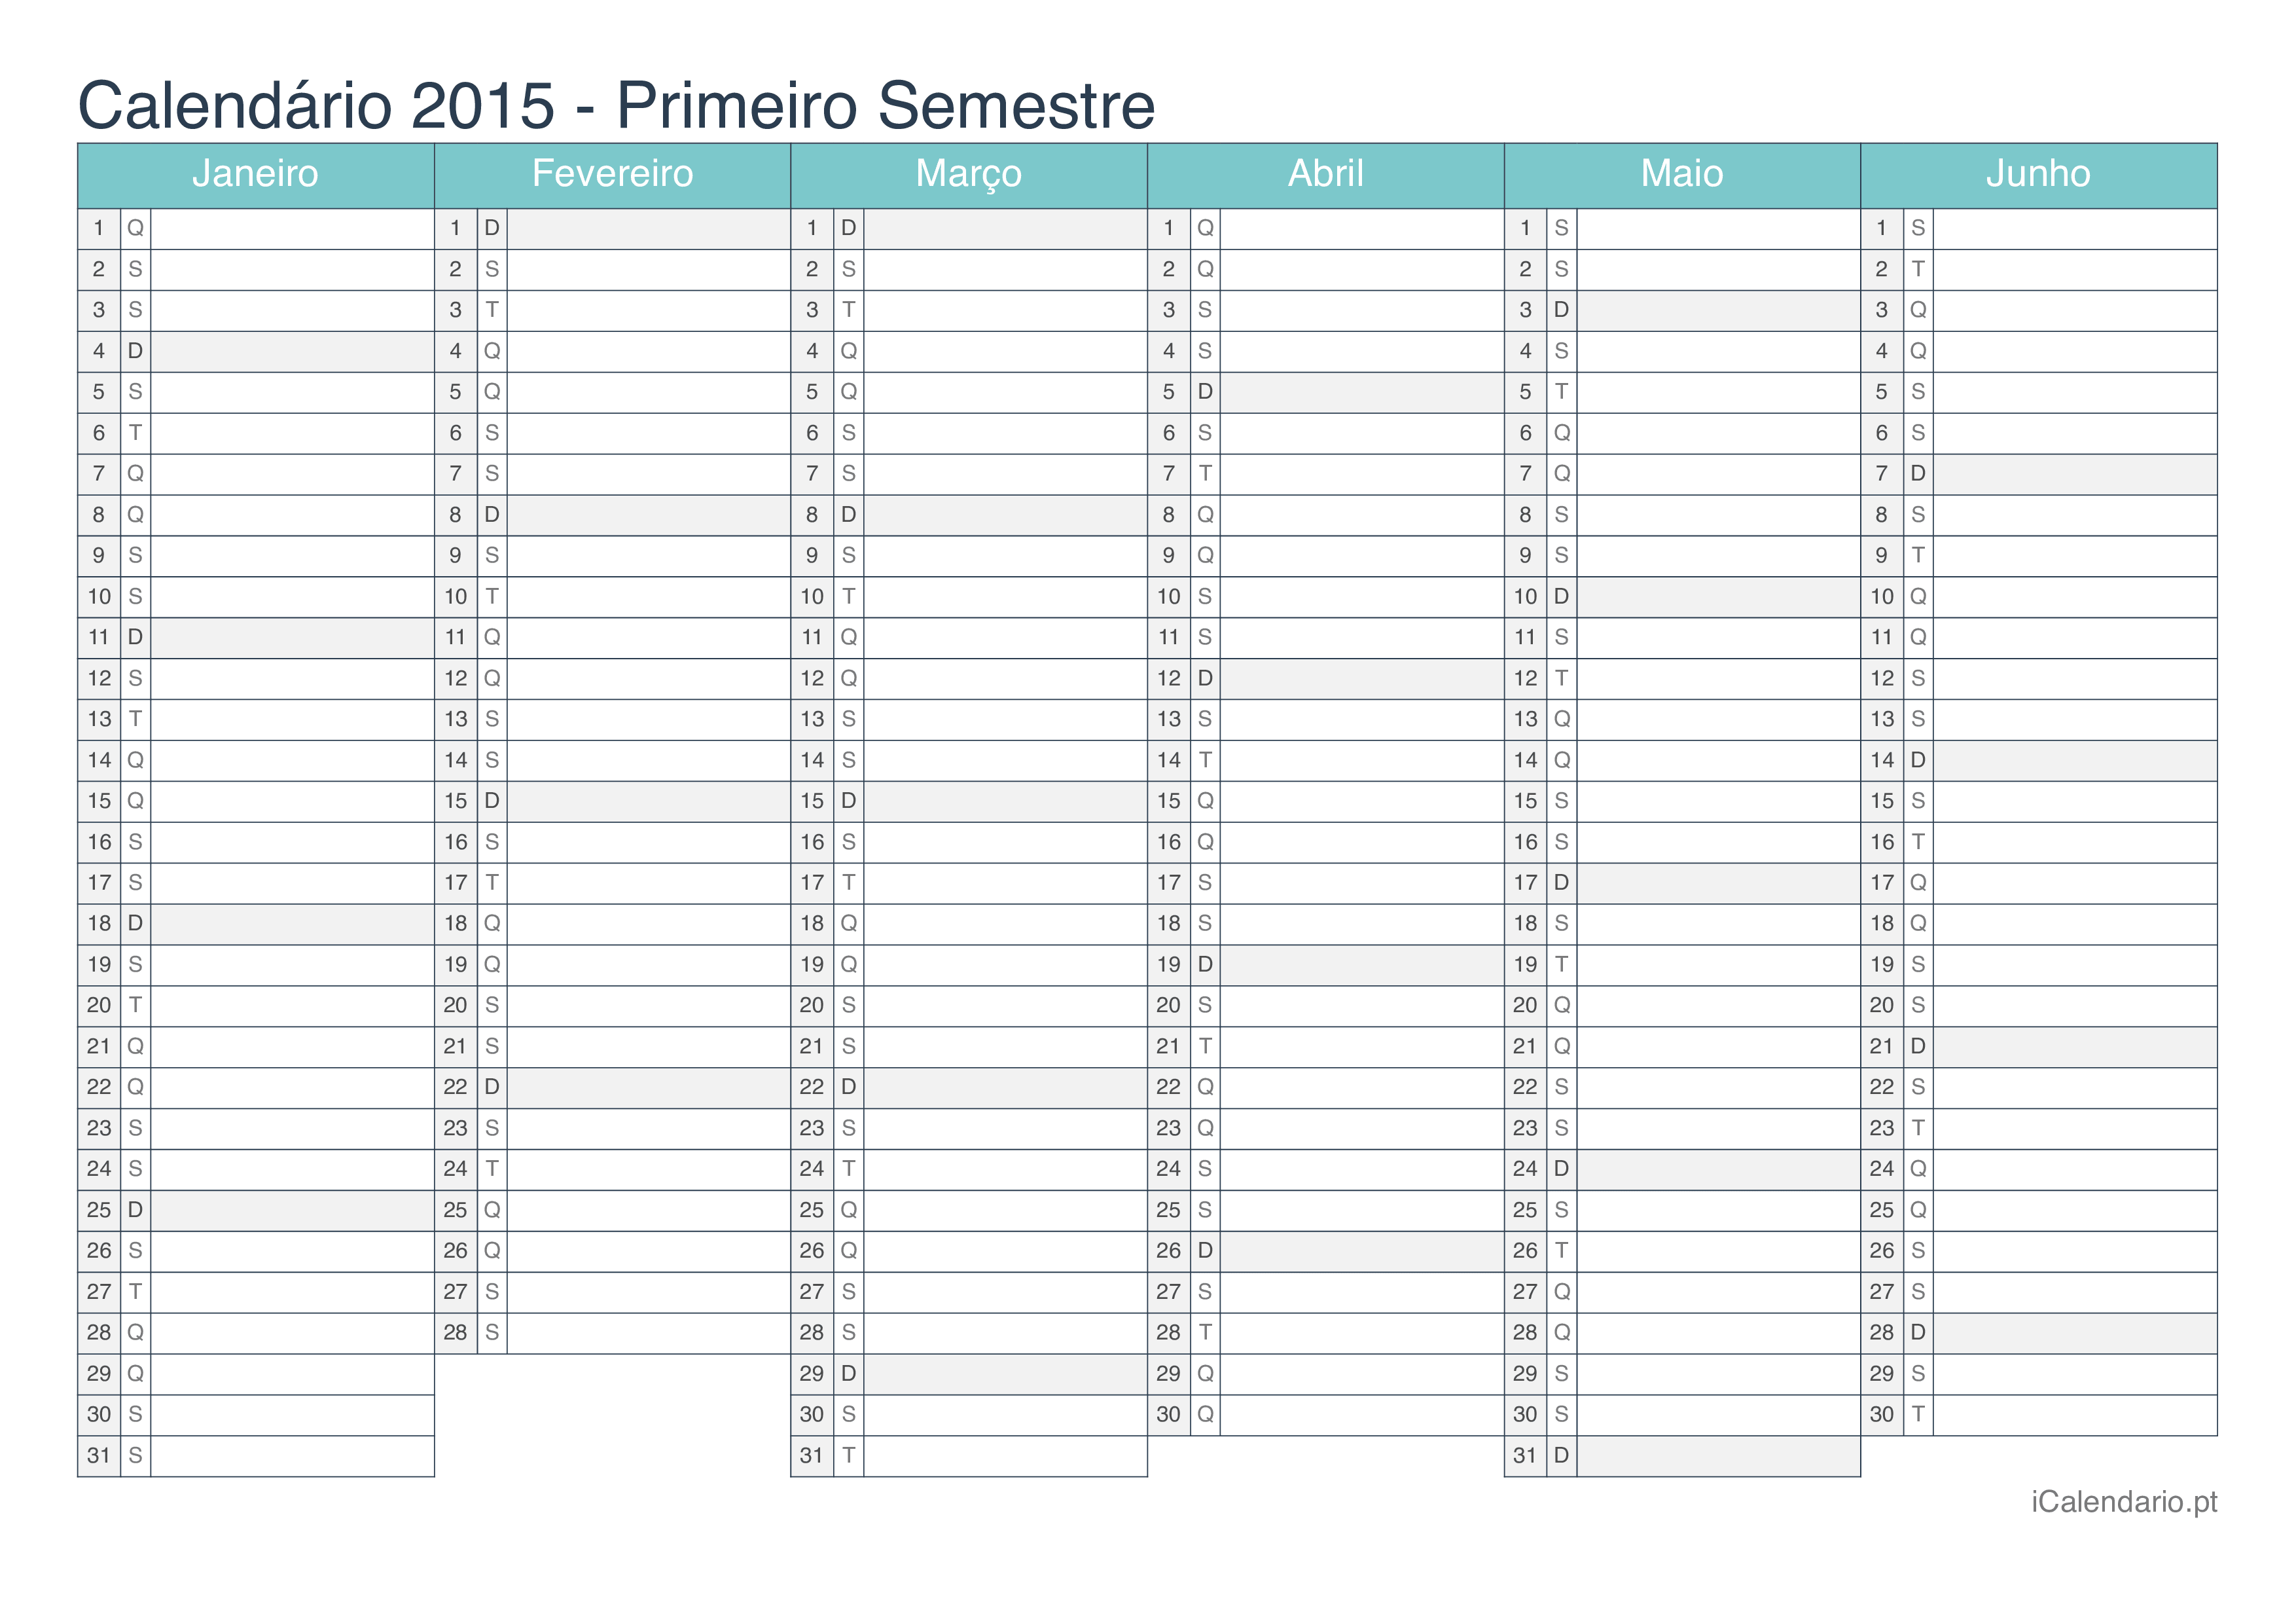 Calendário por semestre 2015 - Turquesa